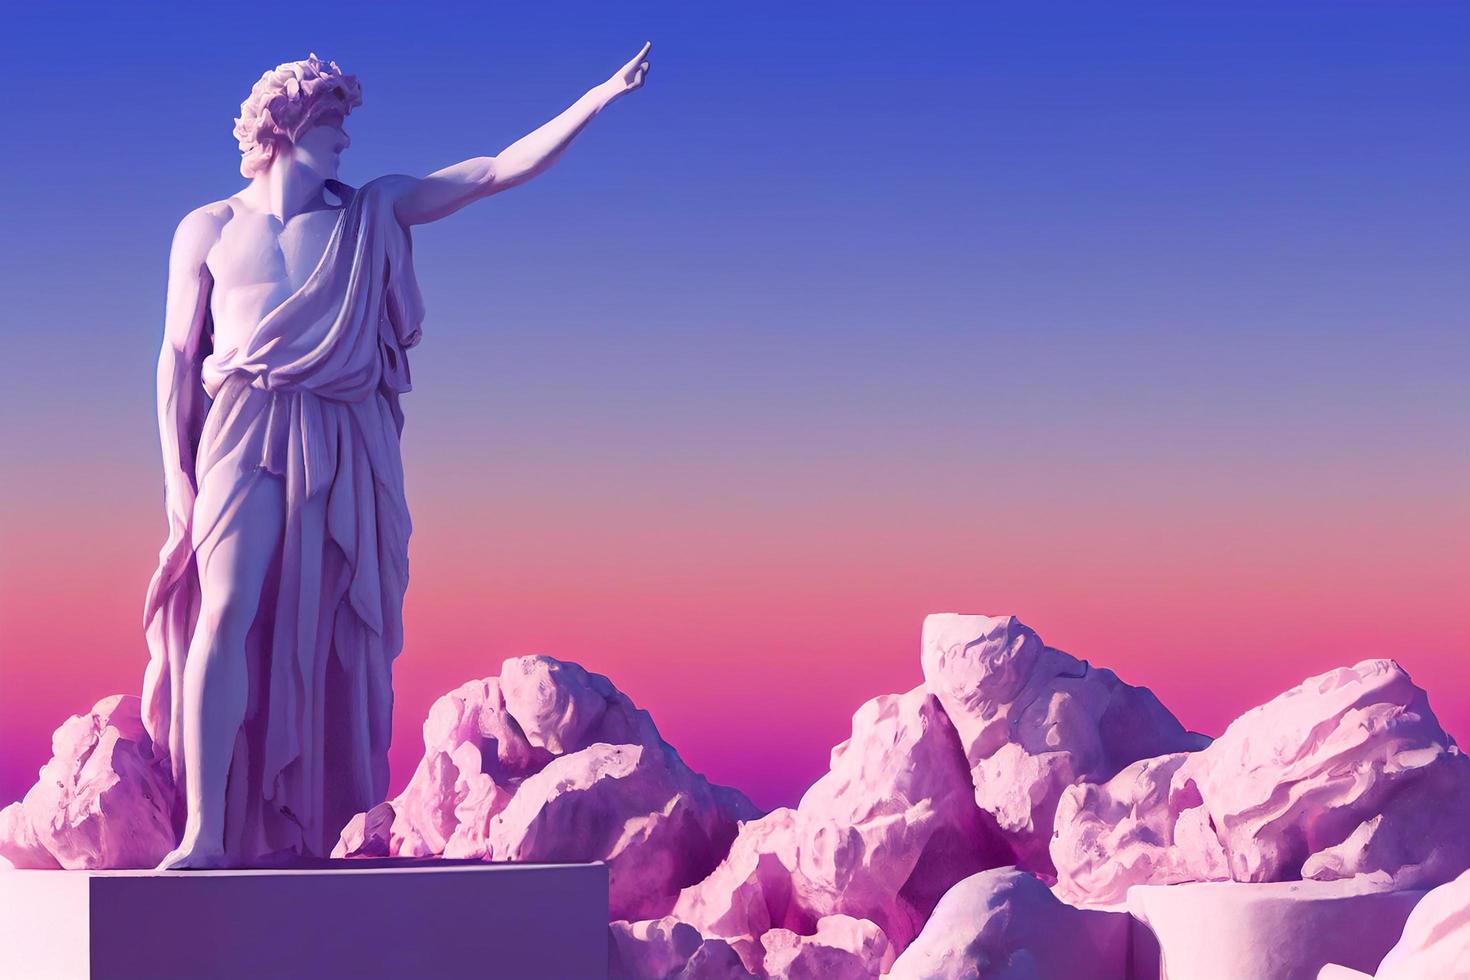 Griechische Gottesskulptur im Retrowave-City-Pop-Design, Farben im Vaporwave-Stil, 3D-Rendering foto